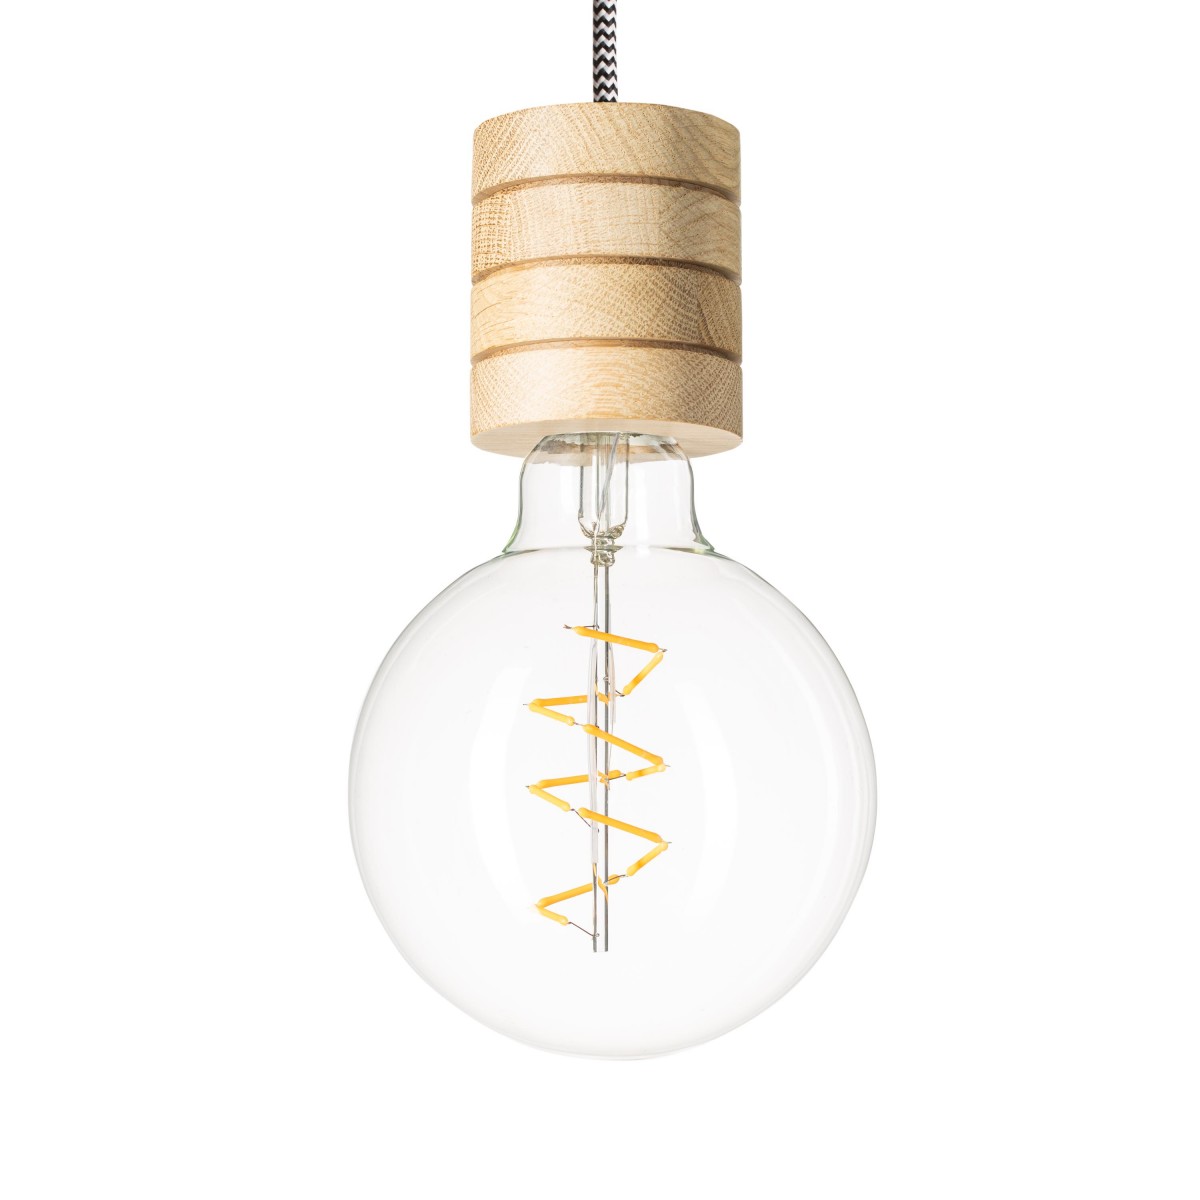 Lichtliebe – Pendelleuchte Fafoo in Eiche und stylischer Edison Spiral LED mit nur 1,8 Watt